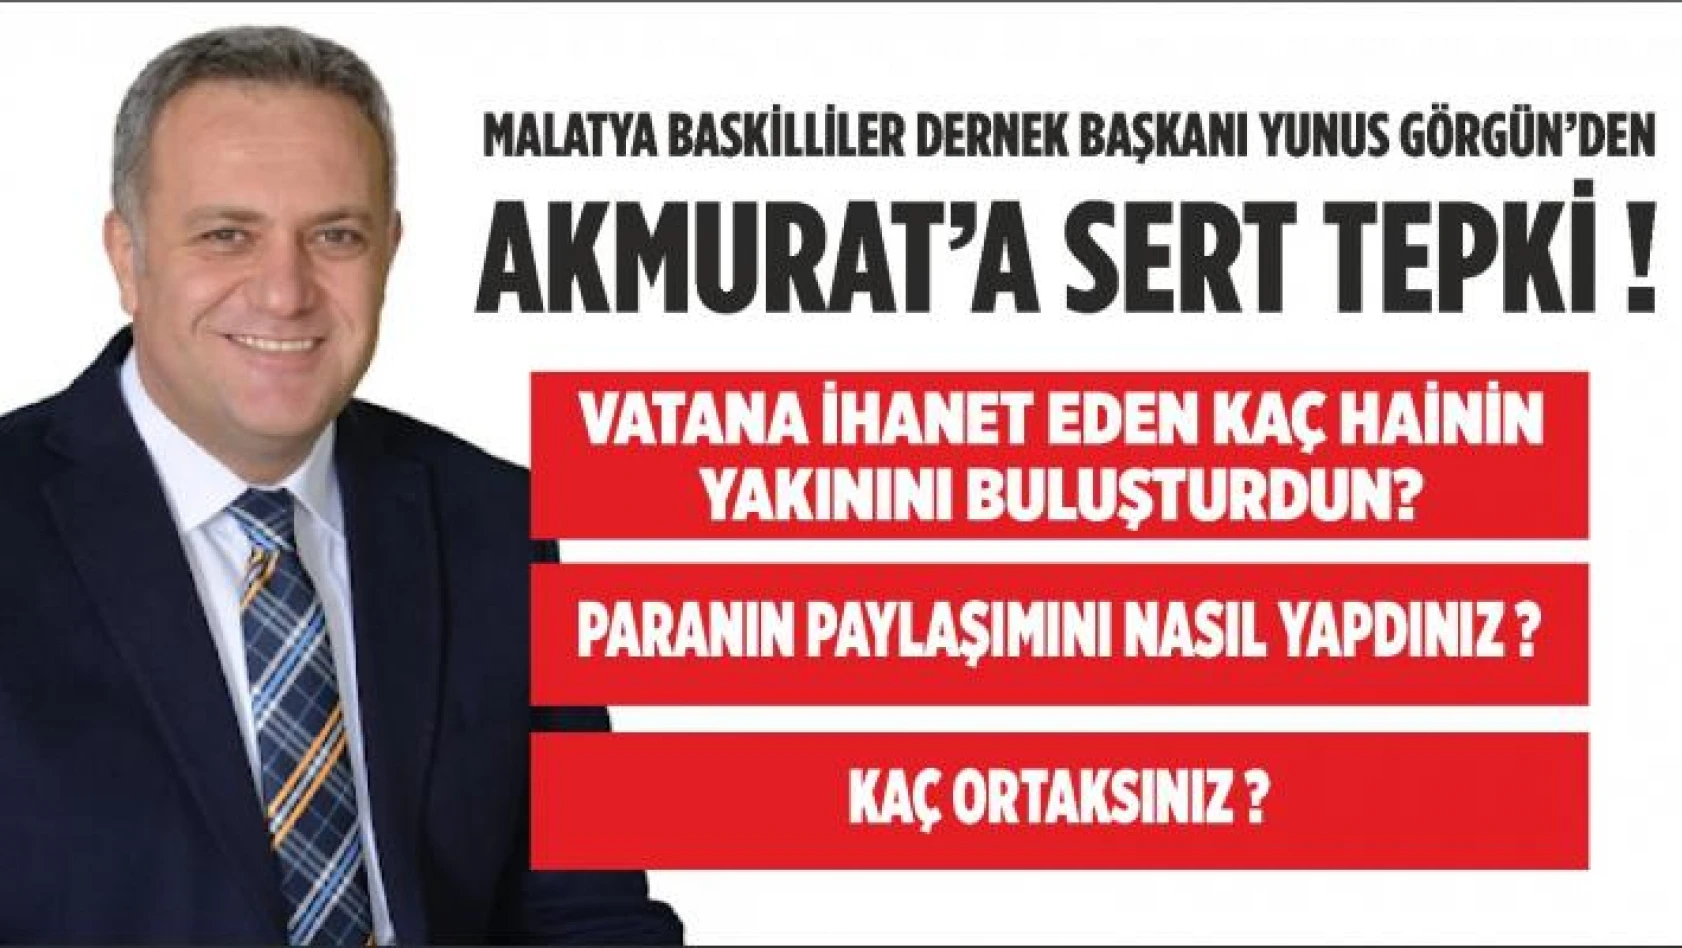 GÖRGÜN'DEN  AKMURAT'A SERT TEPKİ!